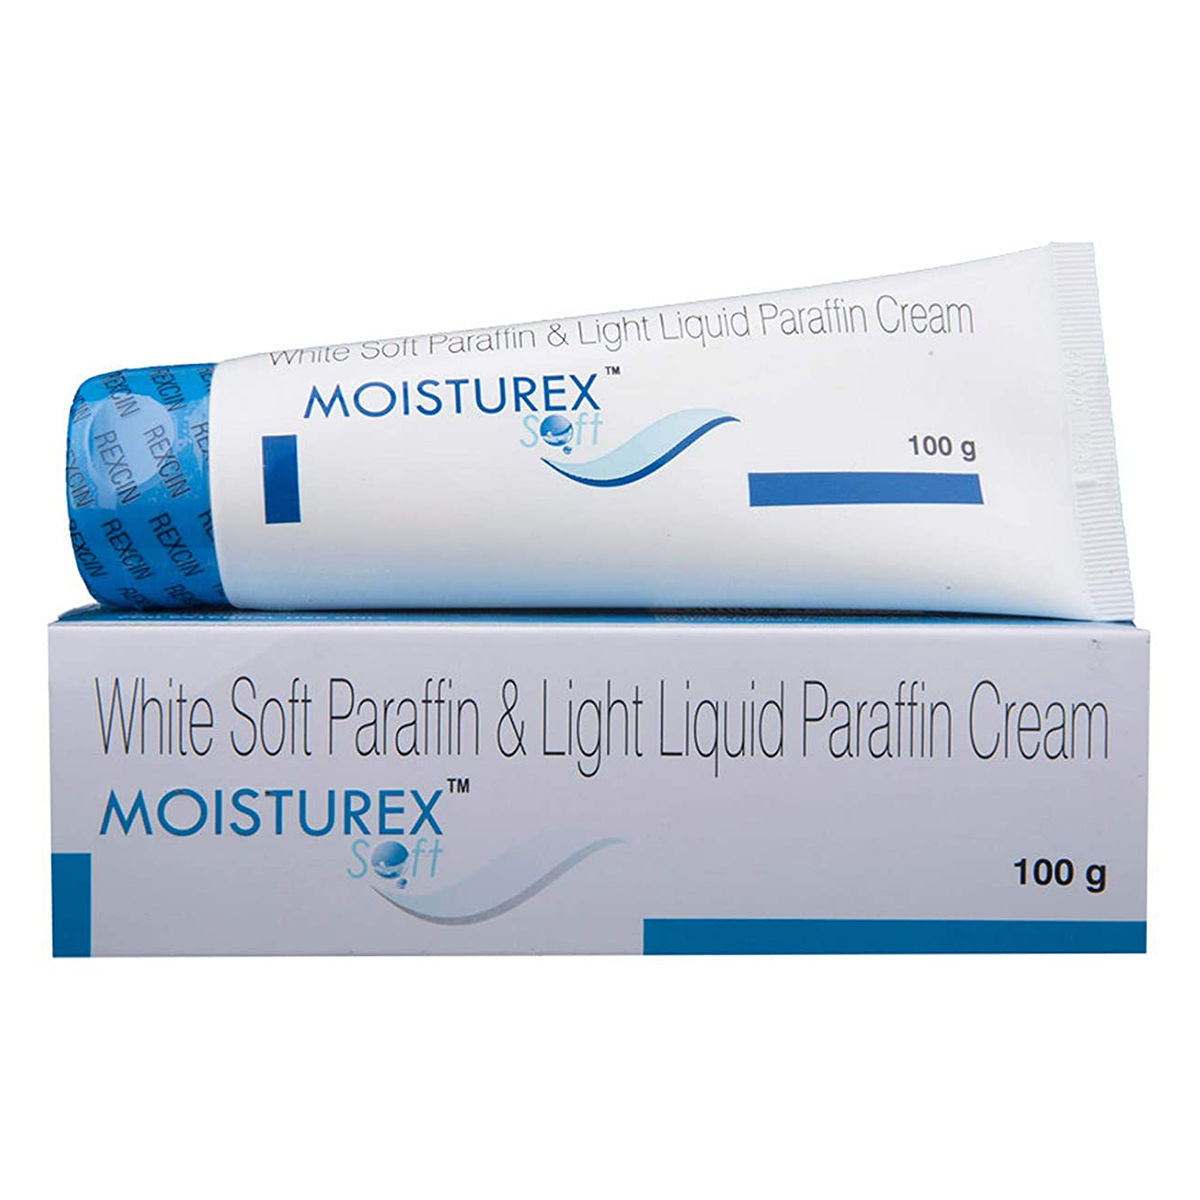 Buy Moisturex Soft Cream 100 gm | White Soft Paraffin & Light Liquid Paraffin | Moisturises Skin Online